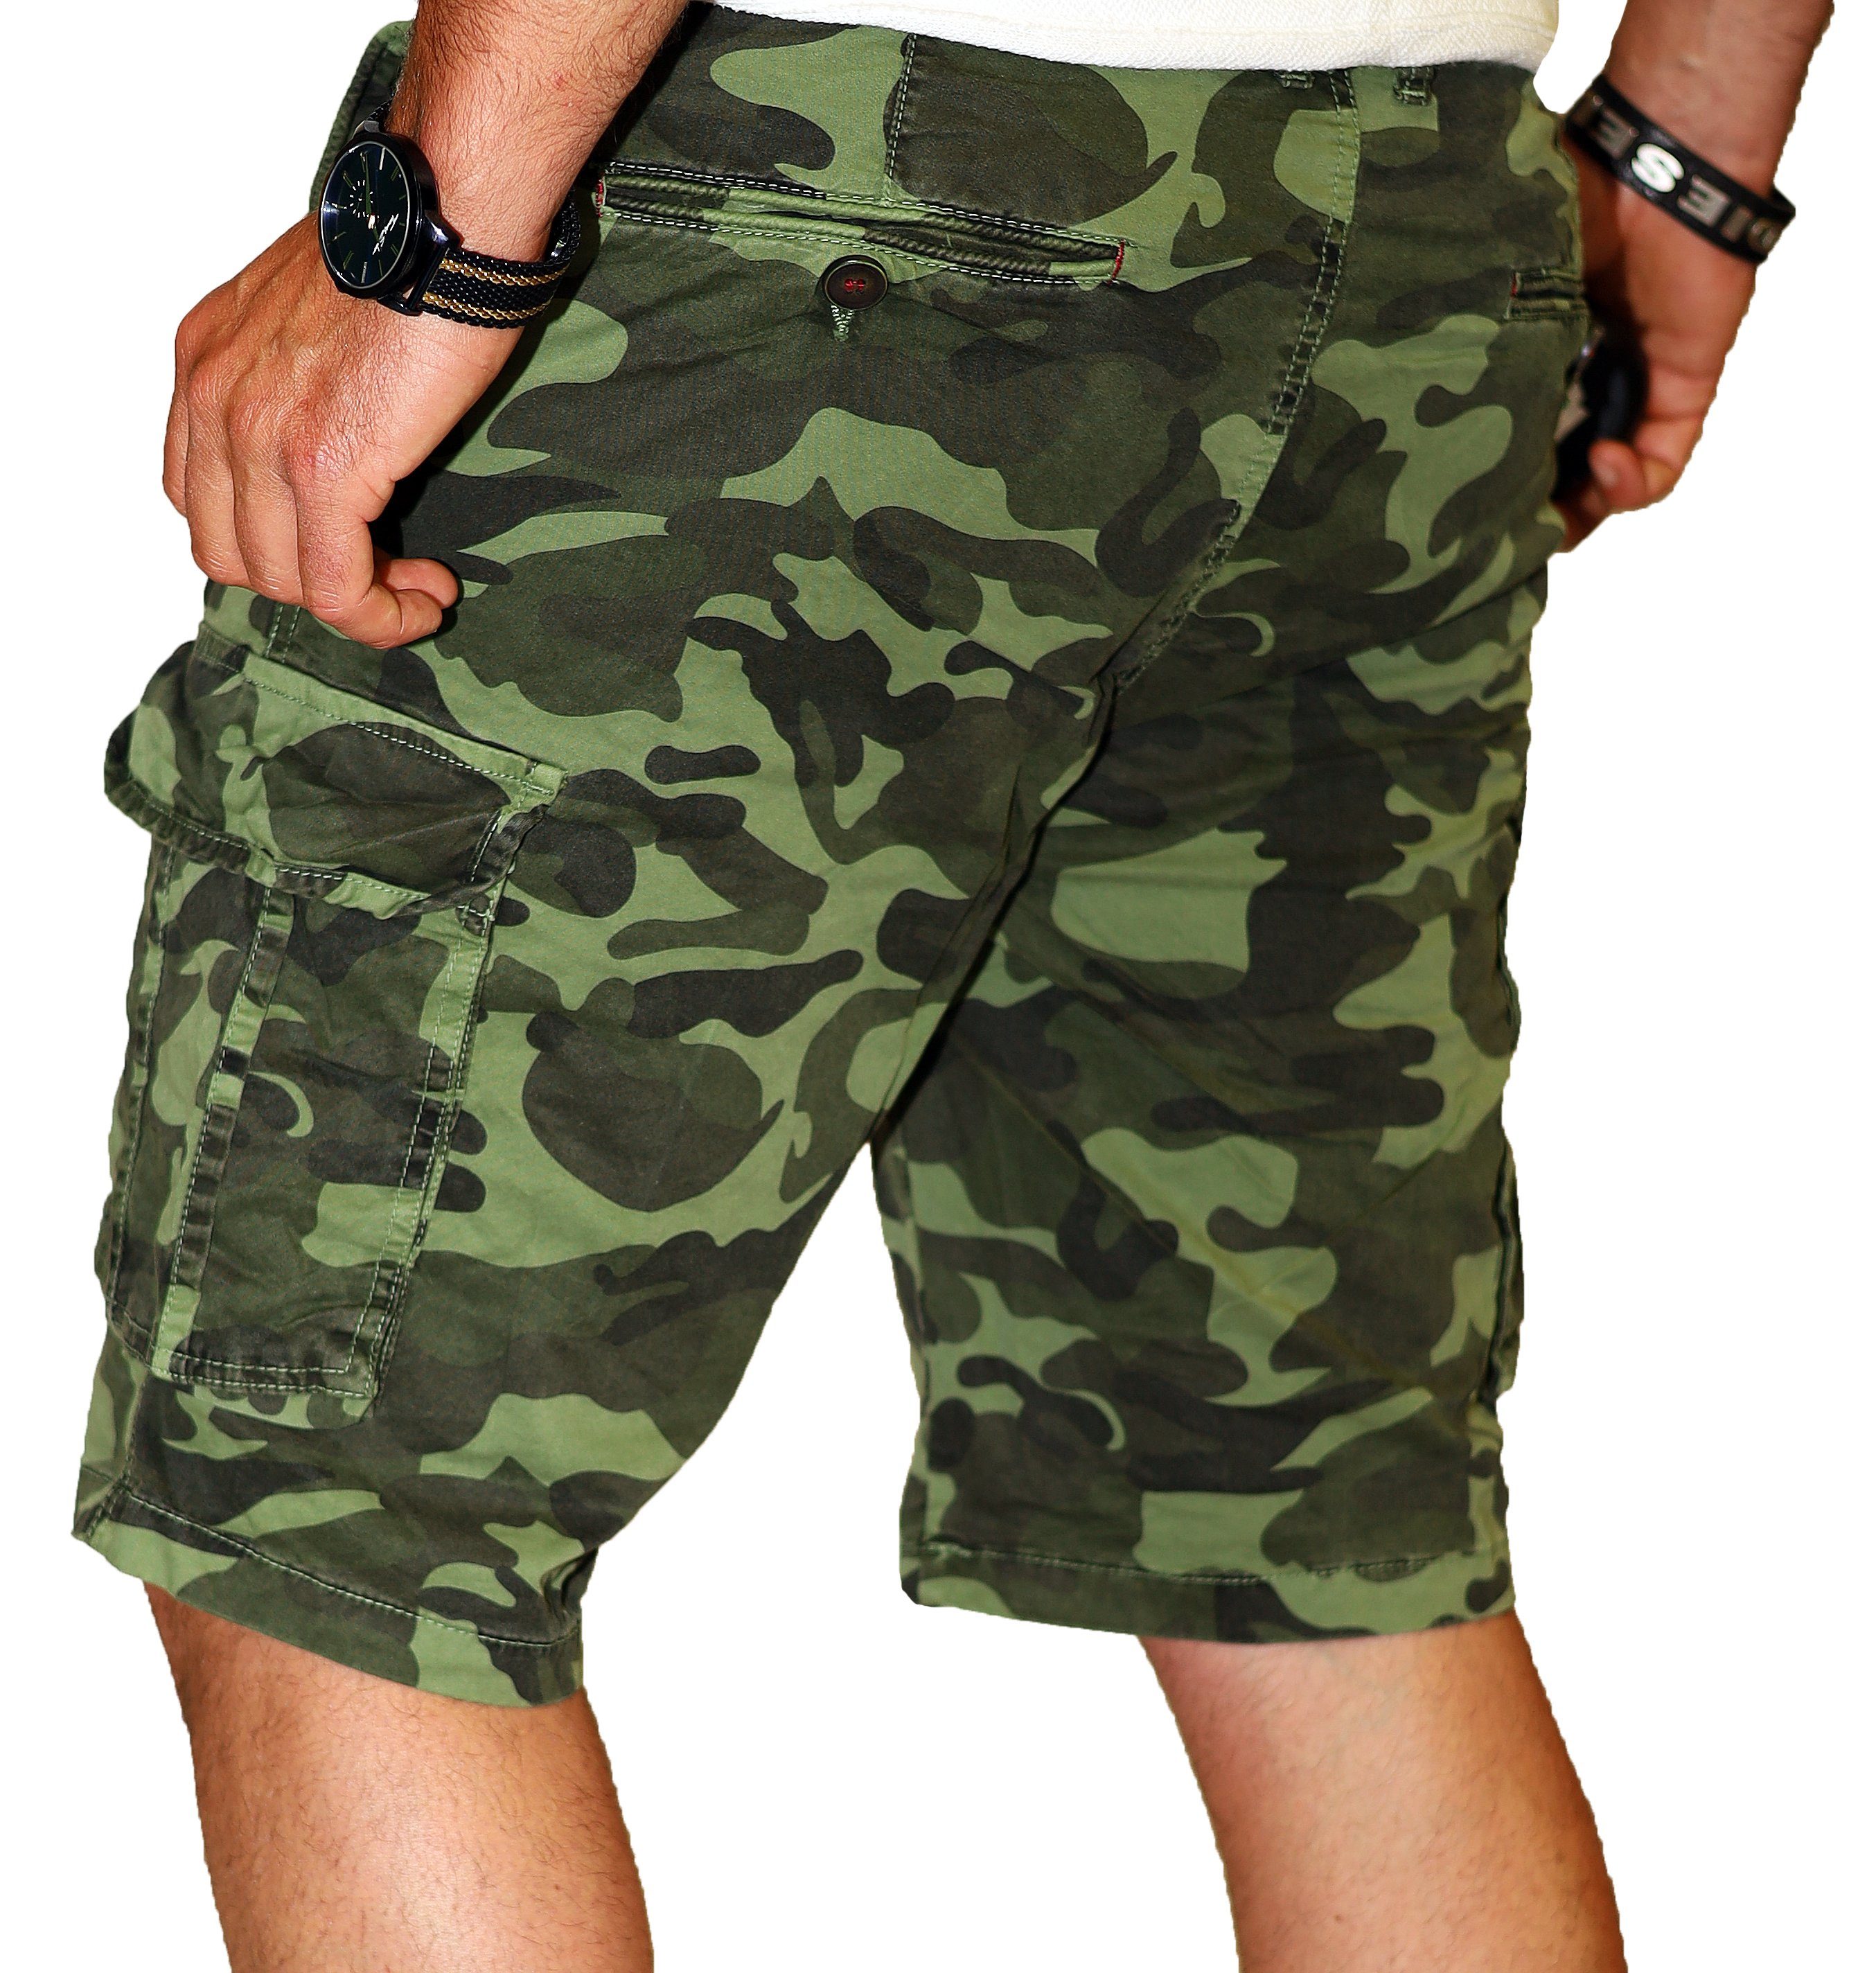 Bermuda RMK 100% Set Hose Cargoshorts in Camouflage Baumwolle Grün Tarnfarben, Short aus kurze Herren Army Tarn